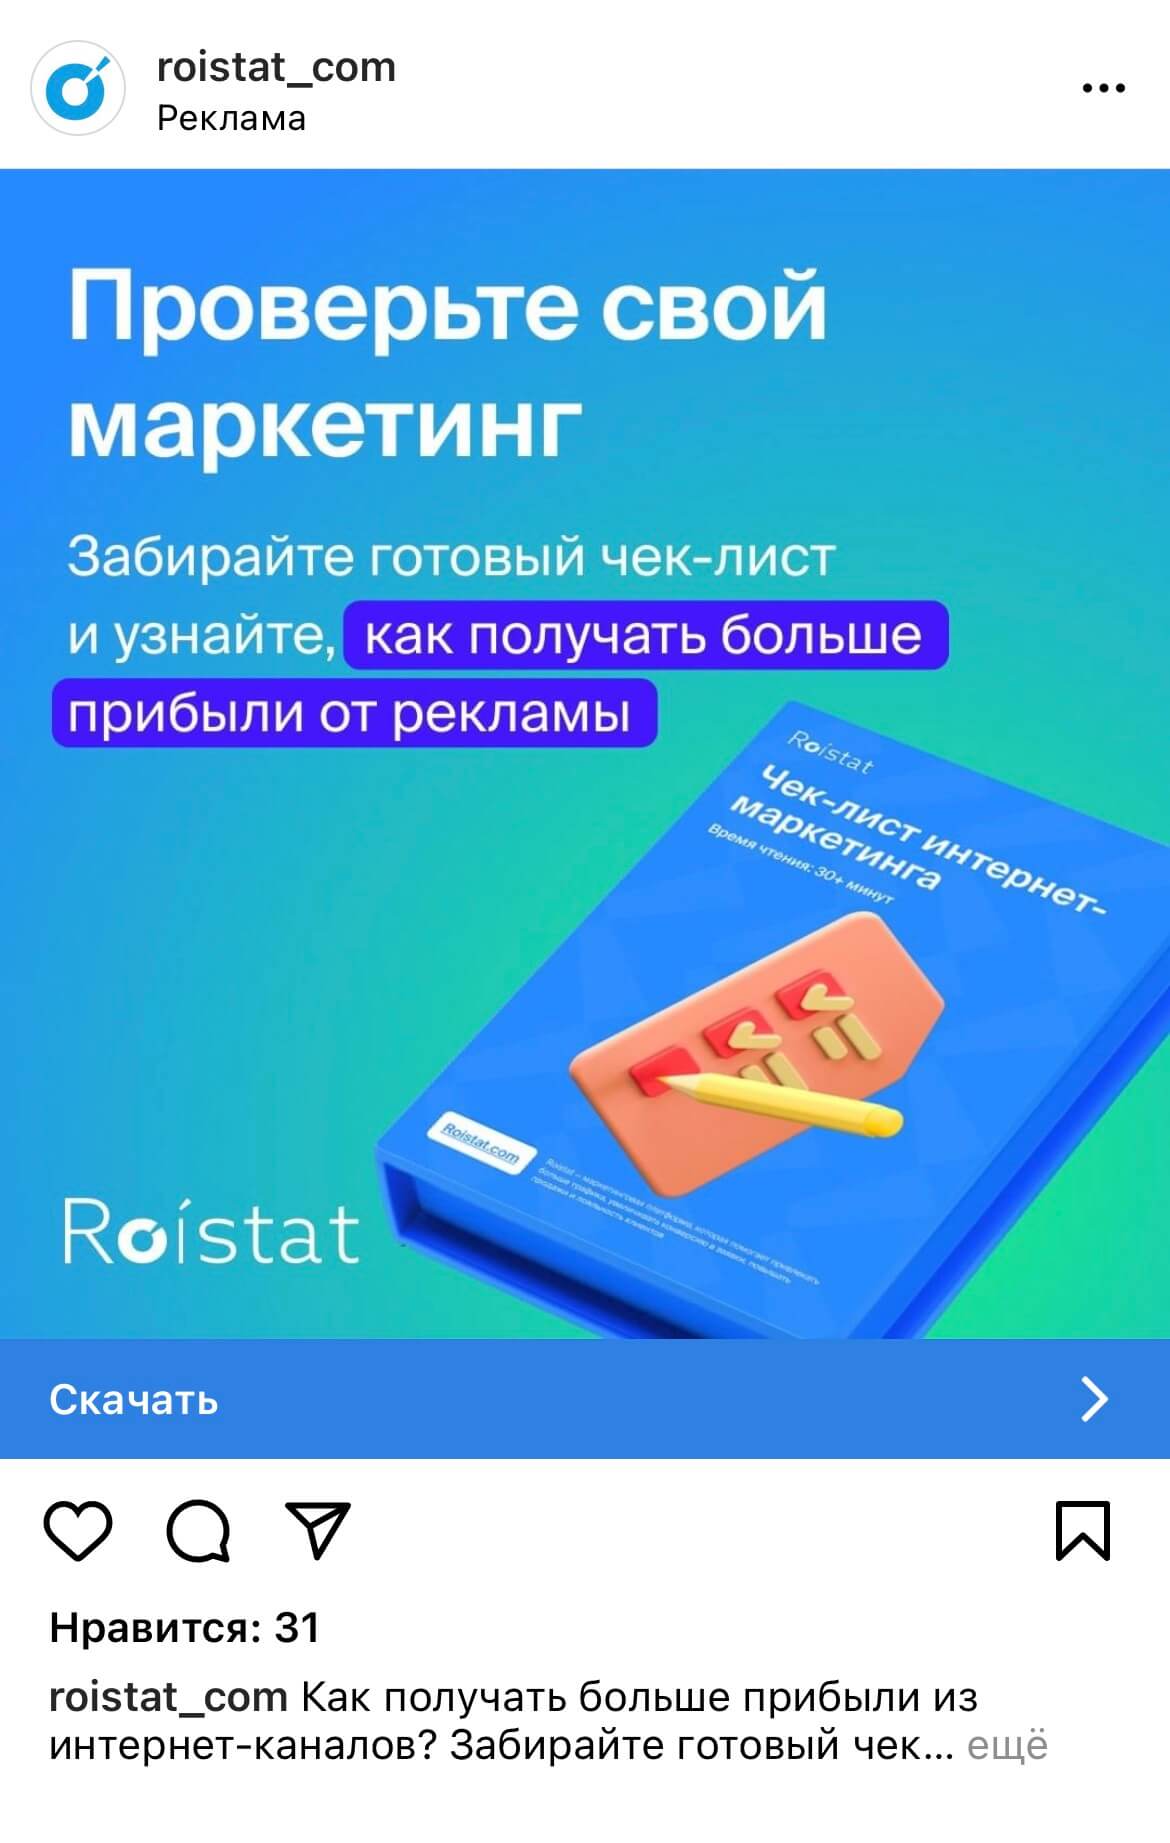 Рекламный пост маркетинговой платформы Roistat в Instagram*